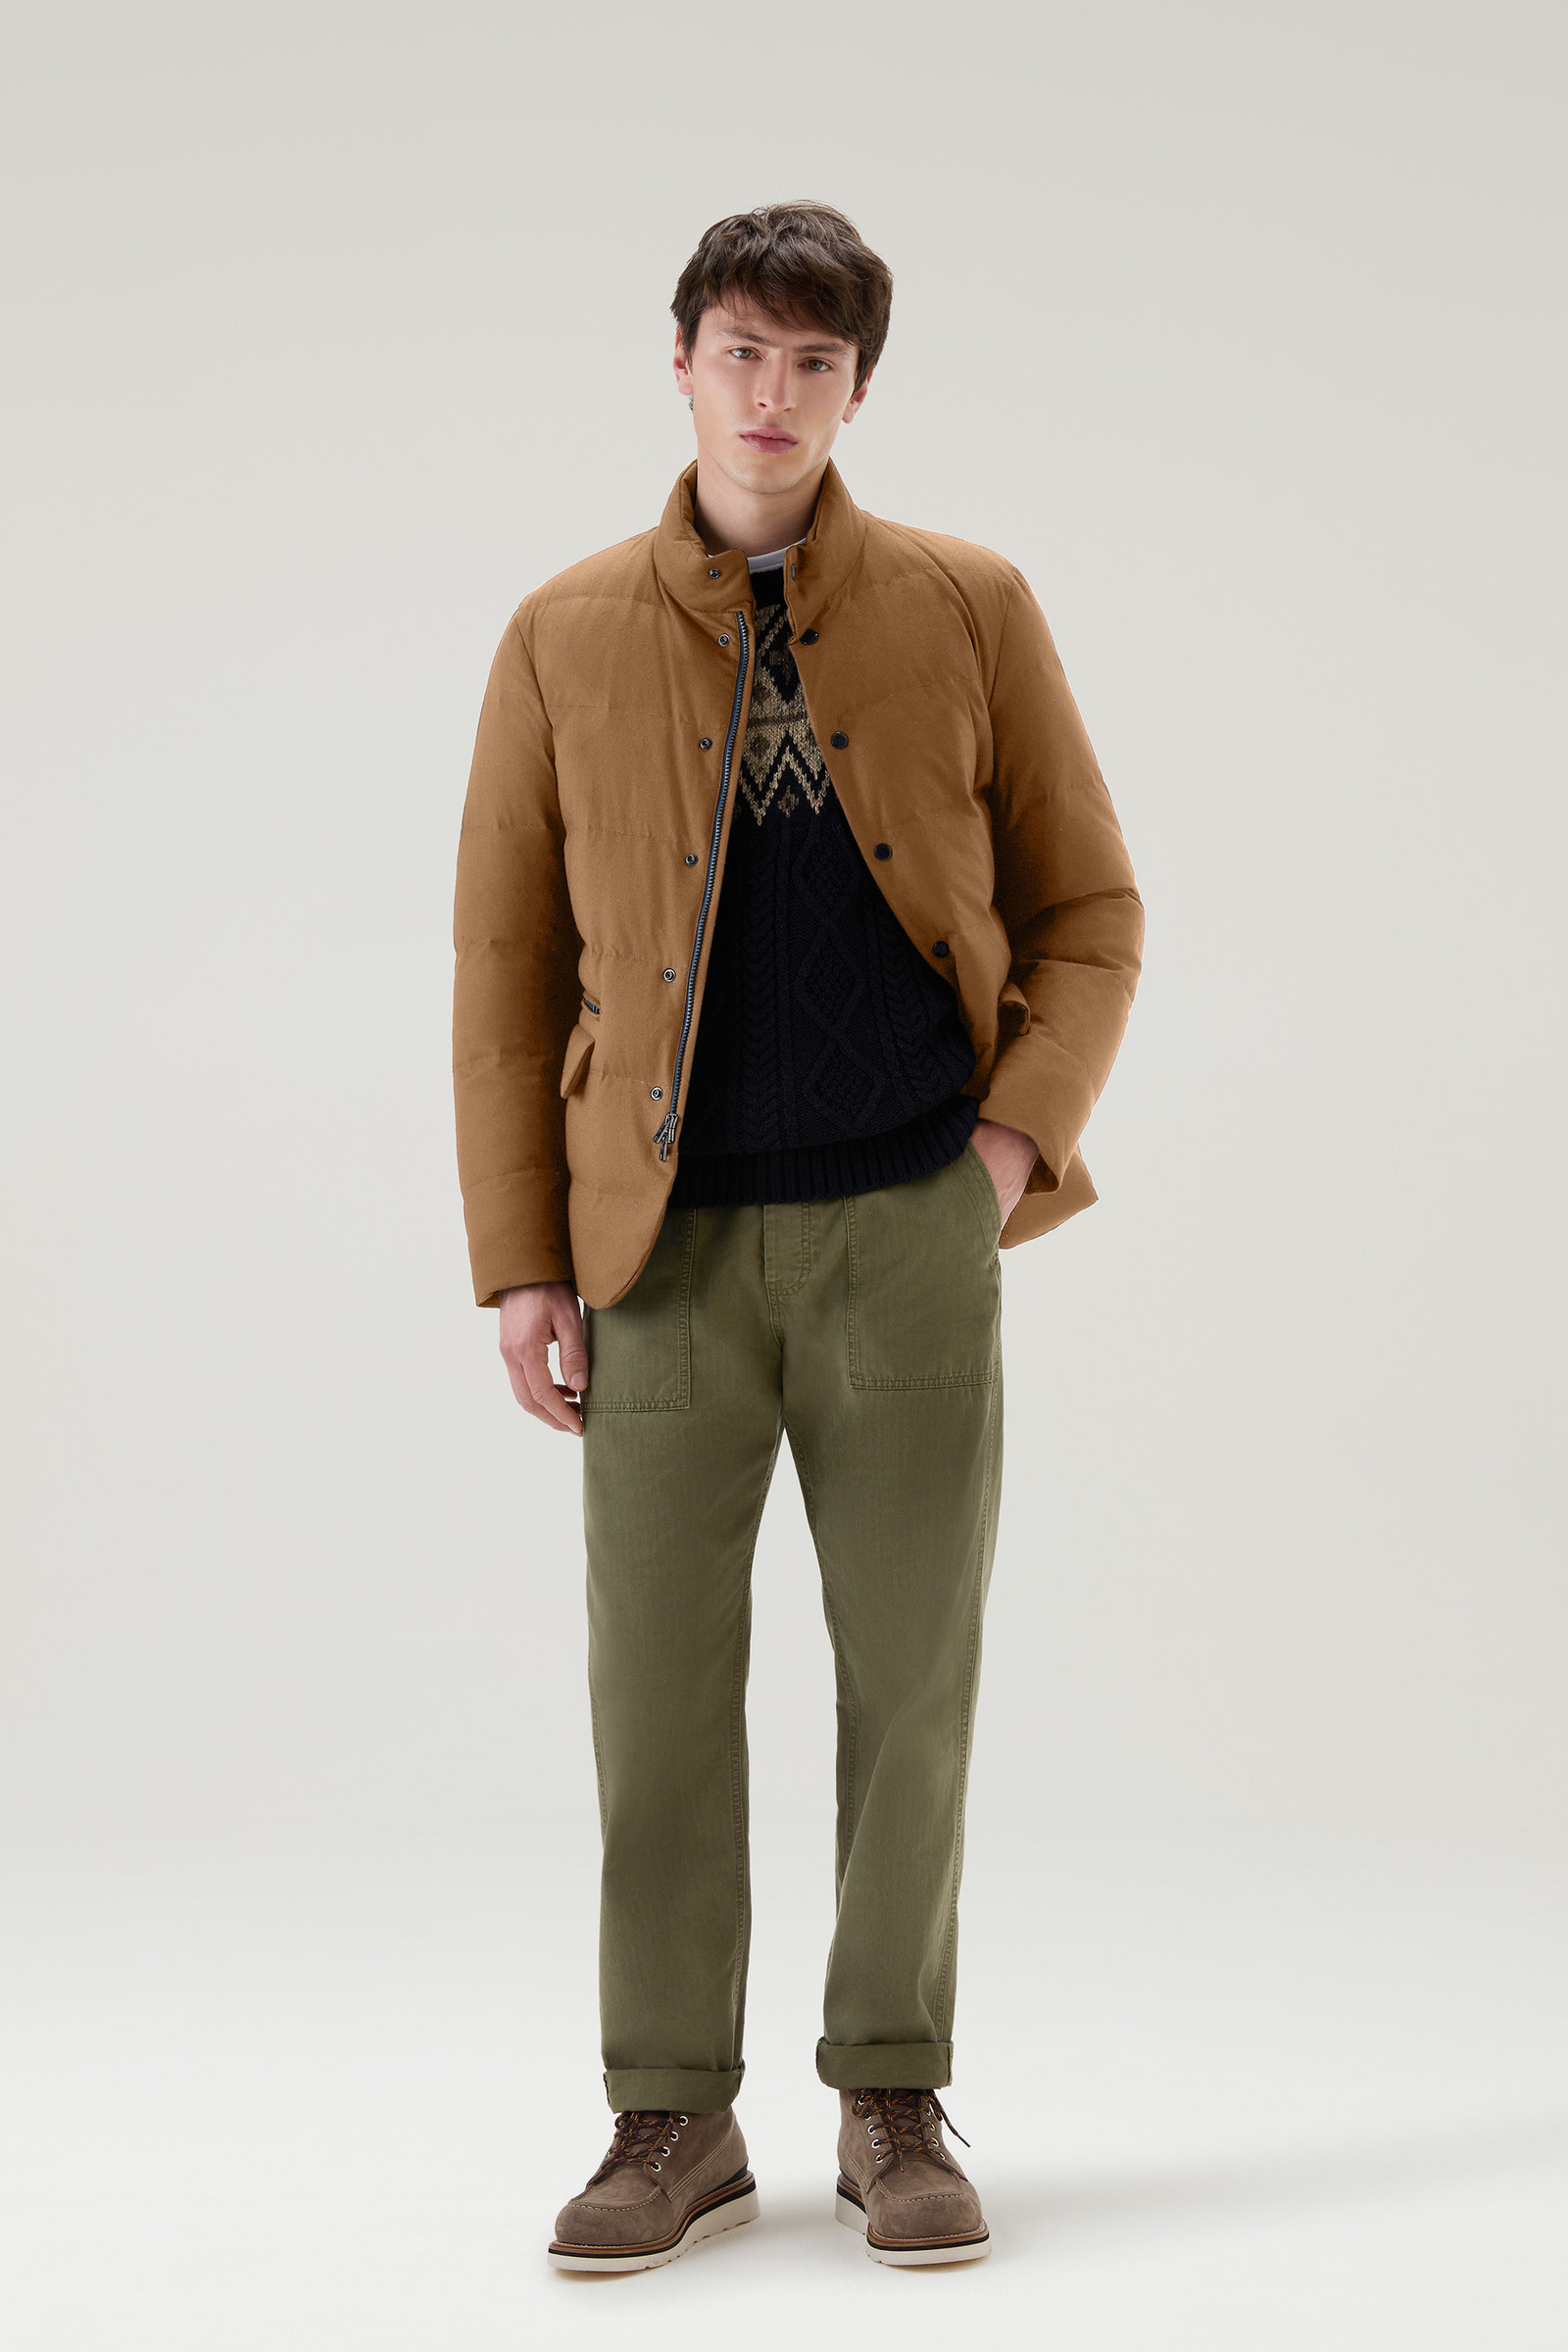 Woolrich Men's Blazer in Vitale Barberis Canonico Virgin Wool Flannel - Brown - Formal Jackets